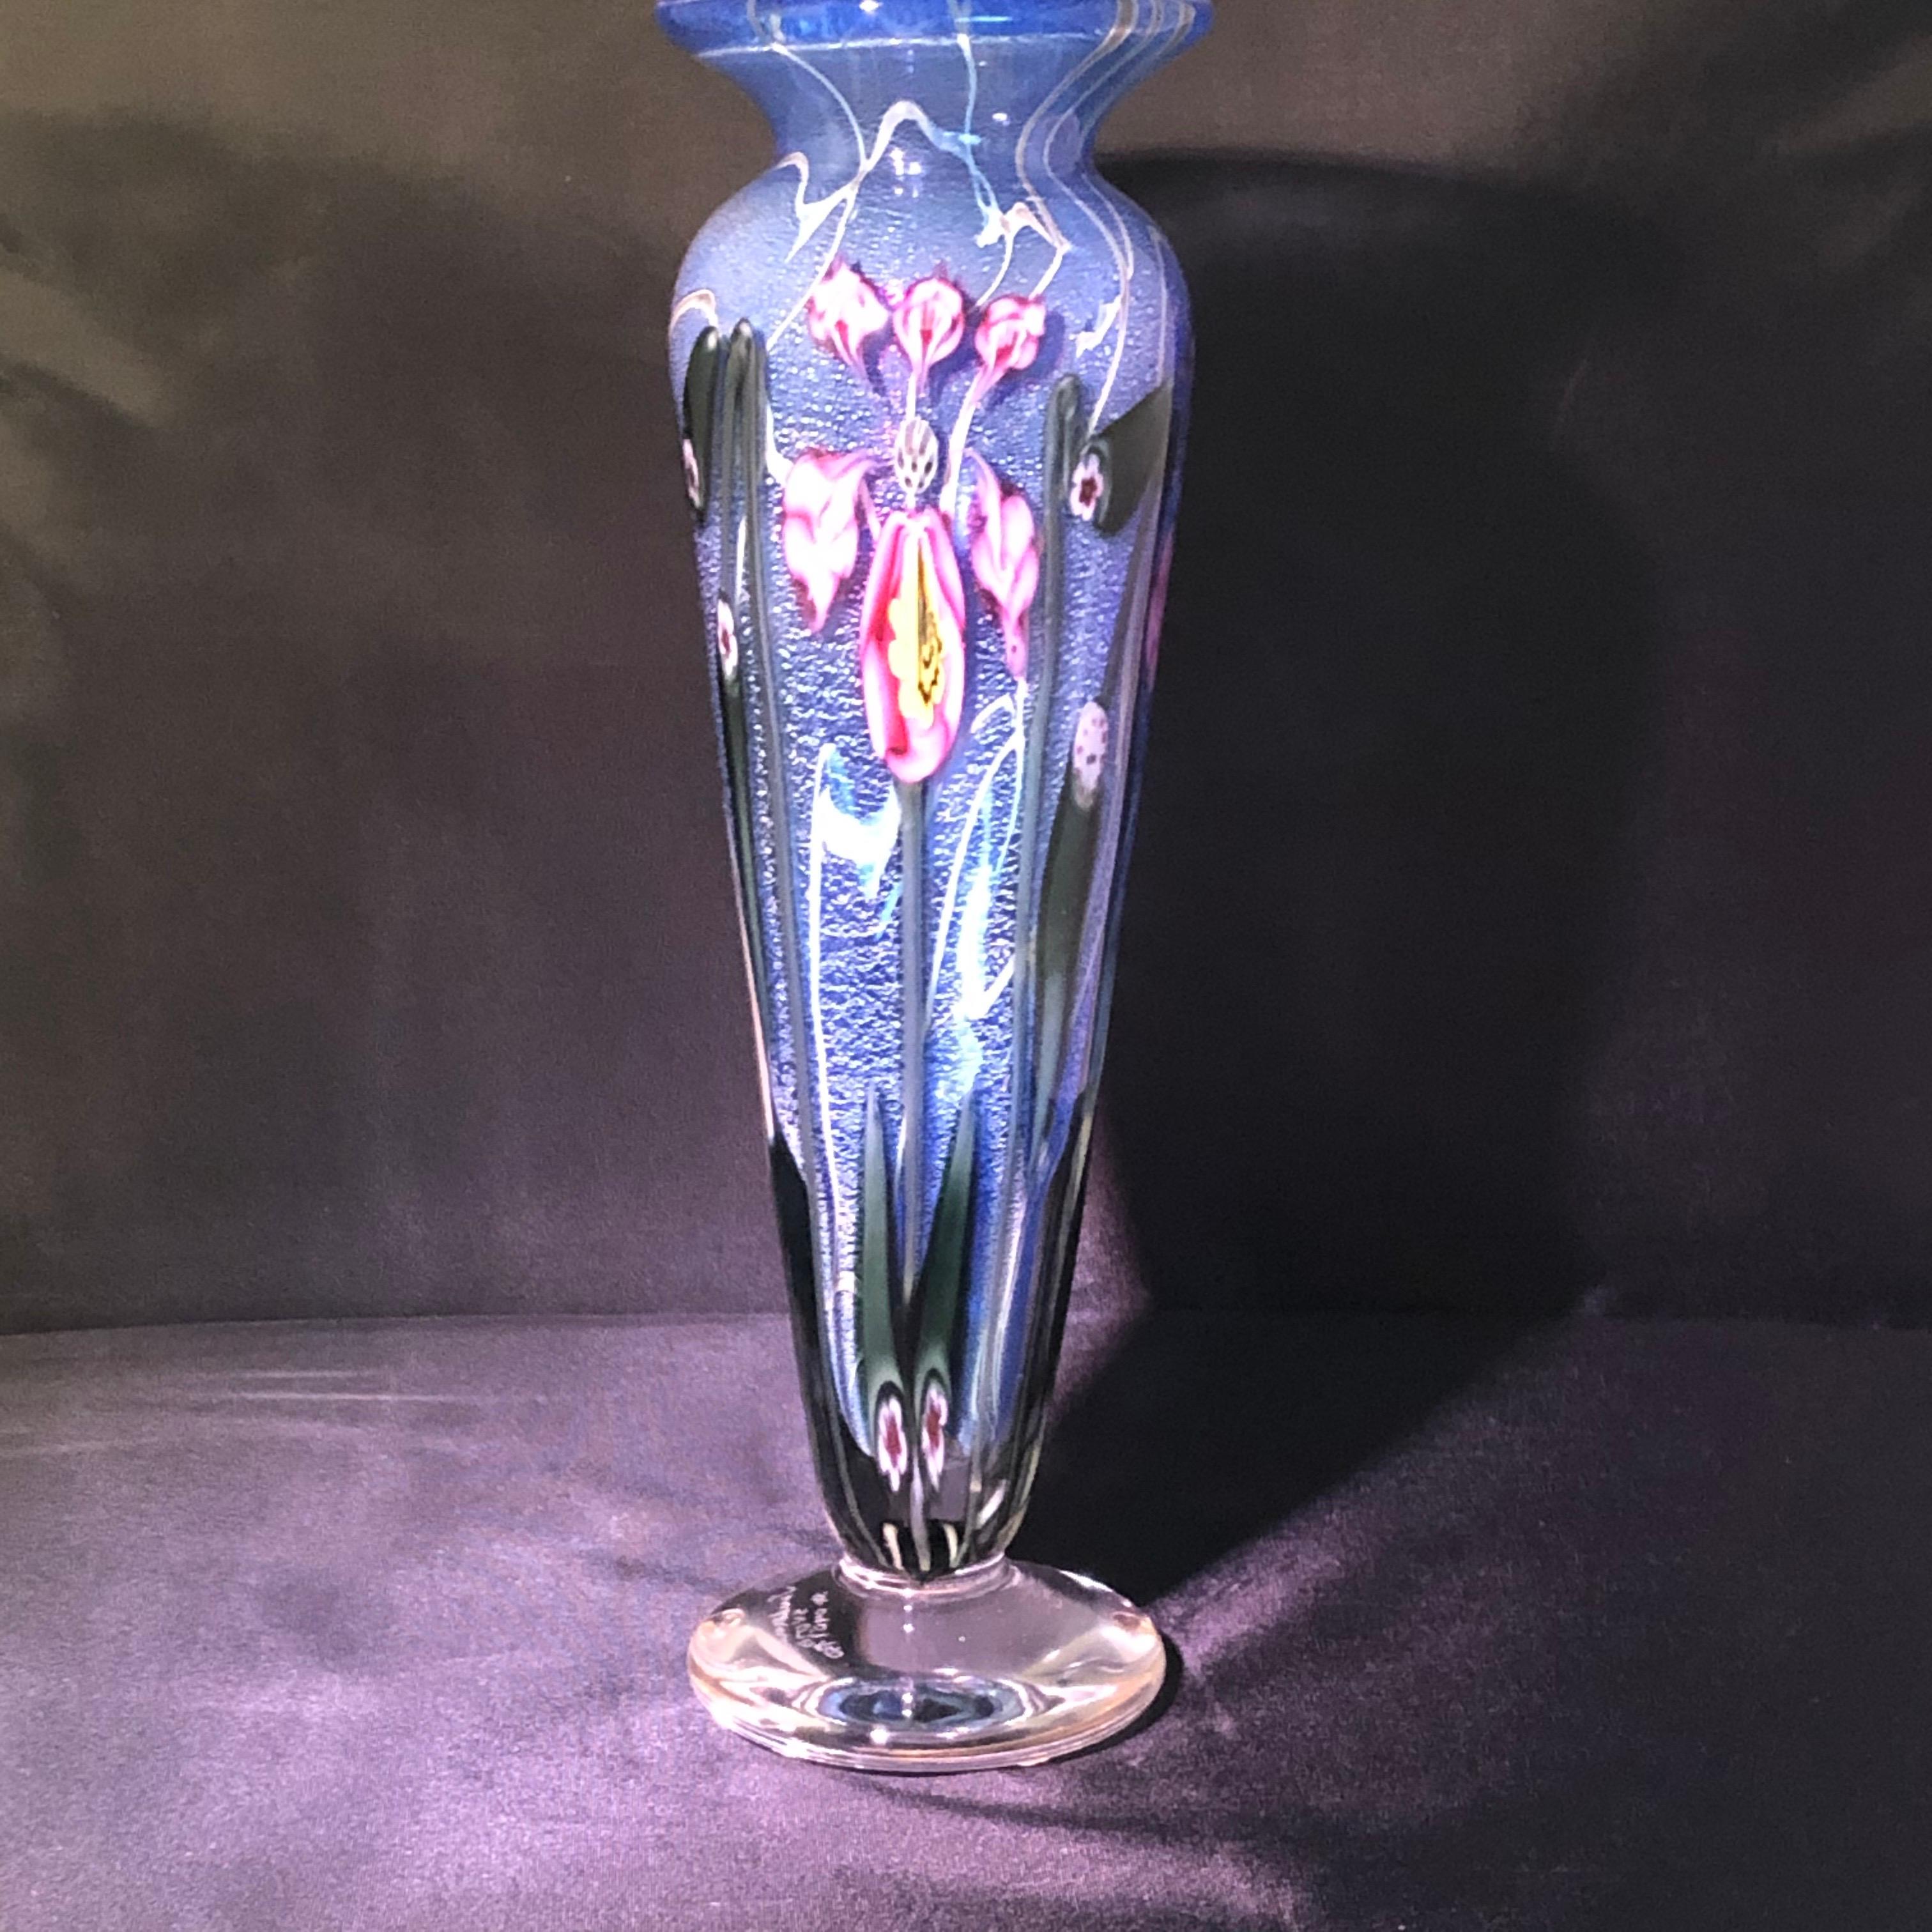 Modern Vandermark Art Glass Vase Signed by Vandermark, Doug Merritt and Stephen Smarr